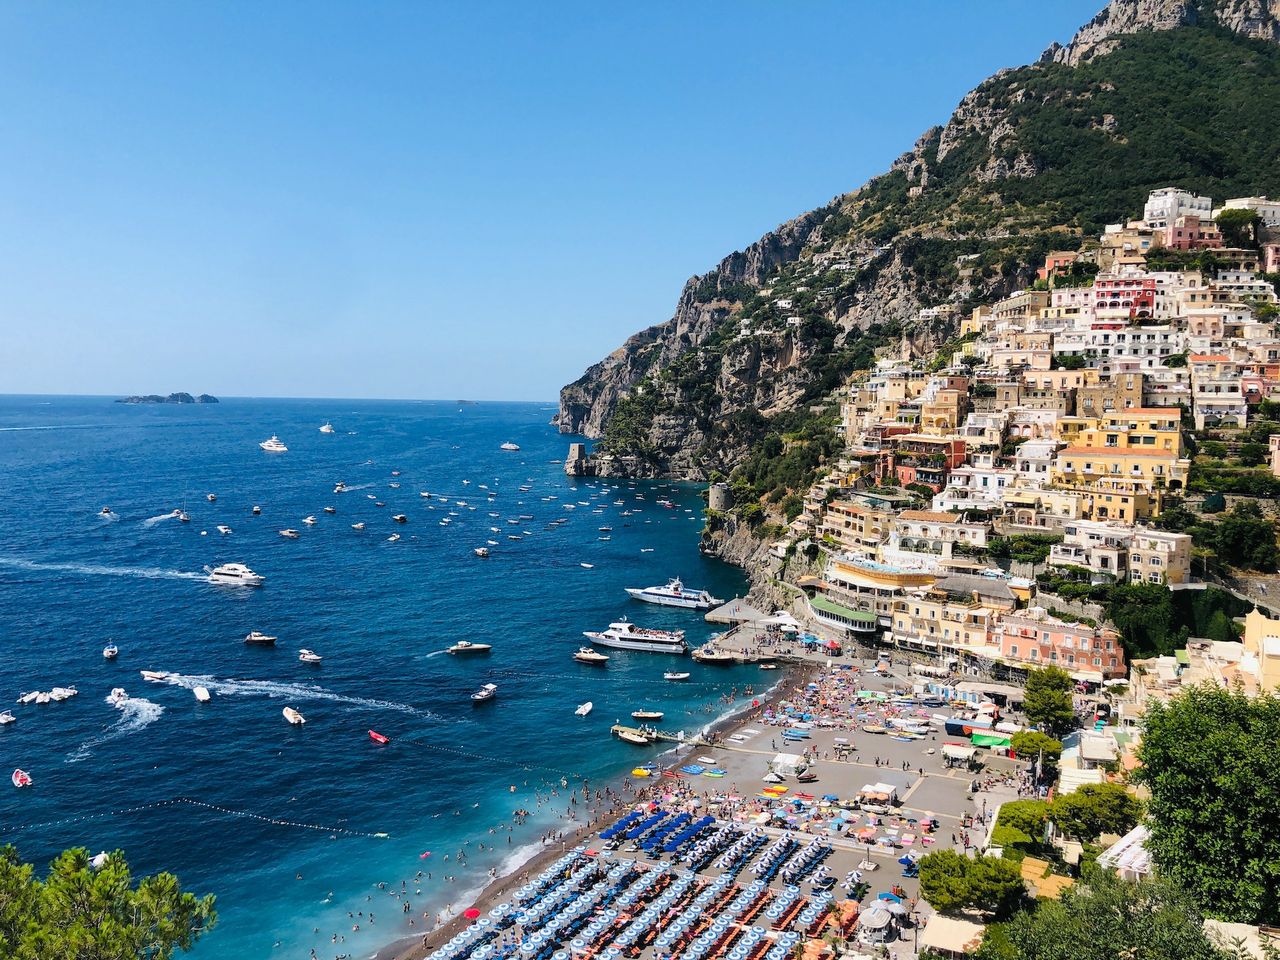 Wybrzeże Amalfi to jedno z najpopularniejszych miejsc na Instagramie.